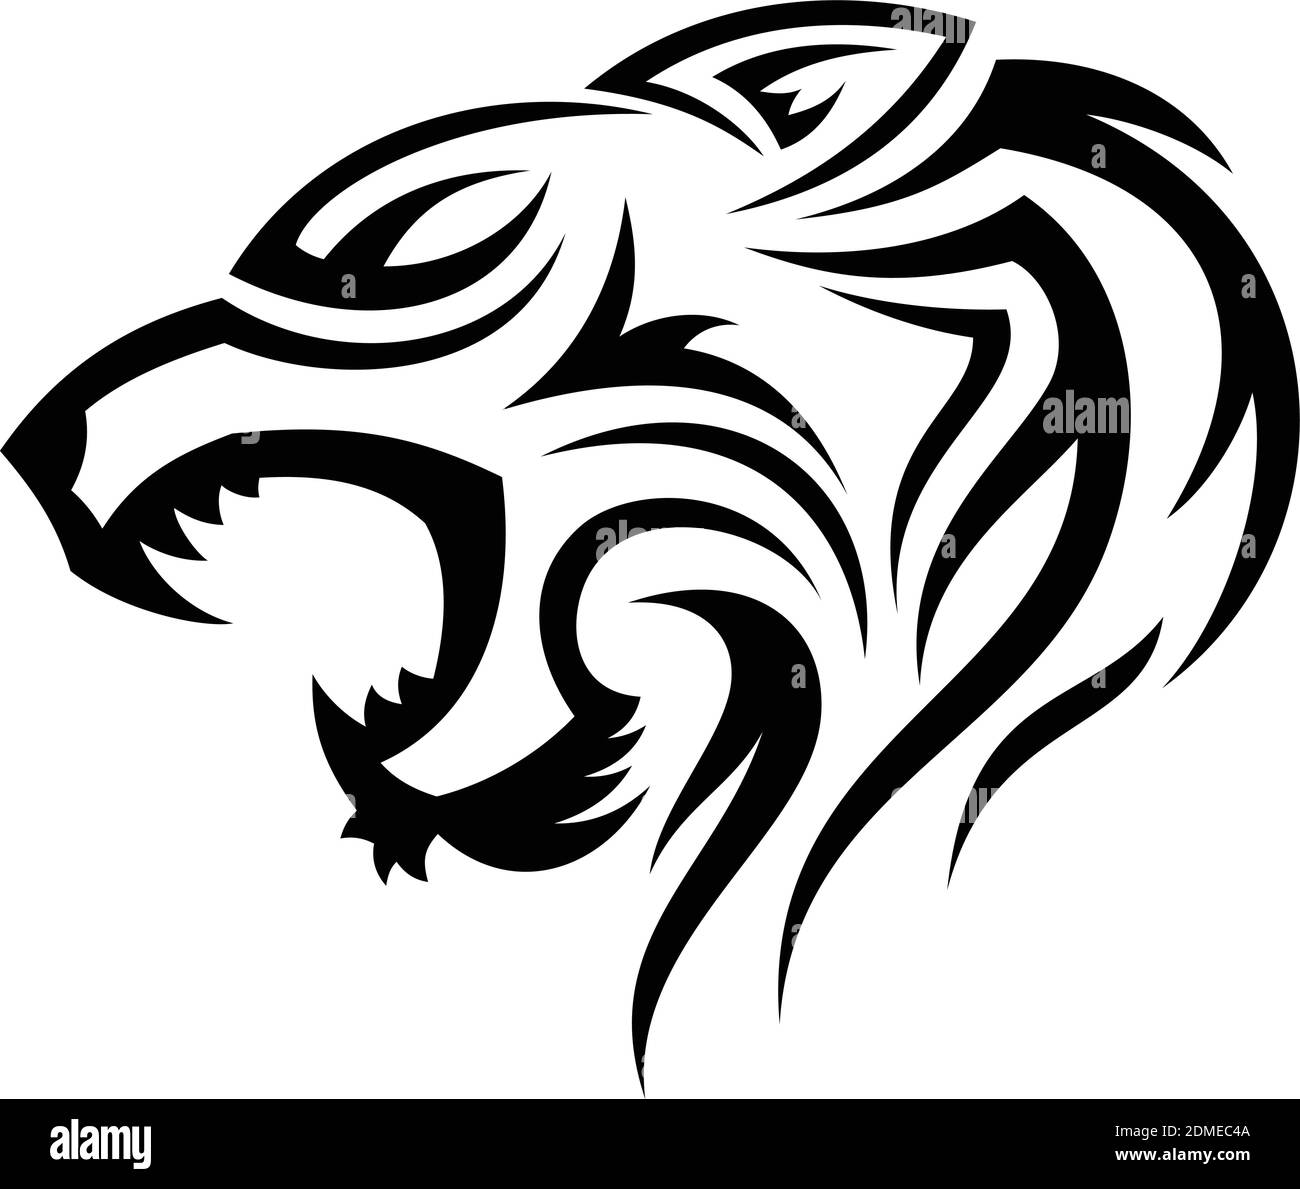 Kreative Silhouette Illustration Tribal Vektor Kopf der Tiger Design-Konzept. Einfache Tierwelt. Vektorgrafik EPS.8 EPS.10 Stock Vektor